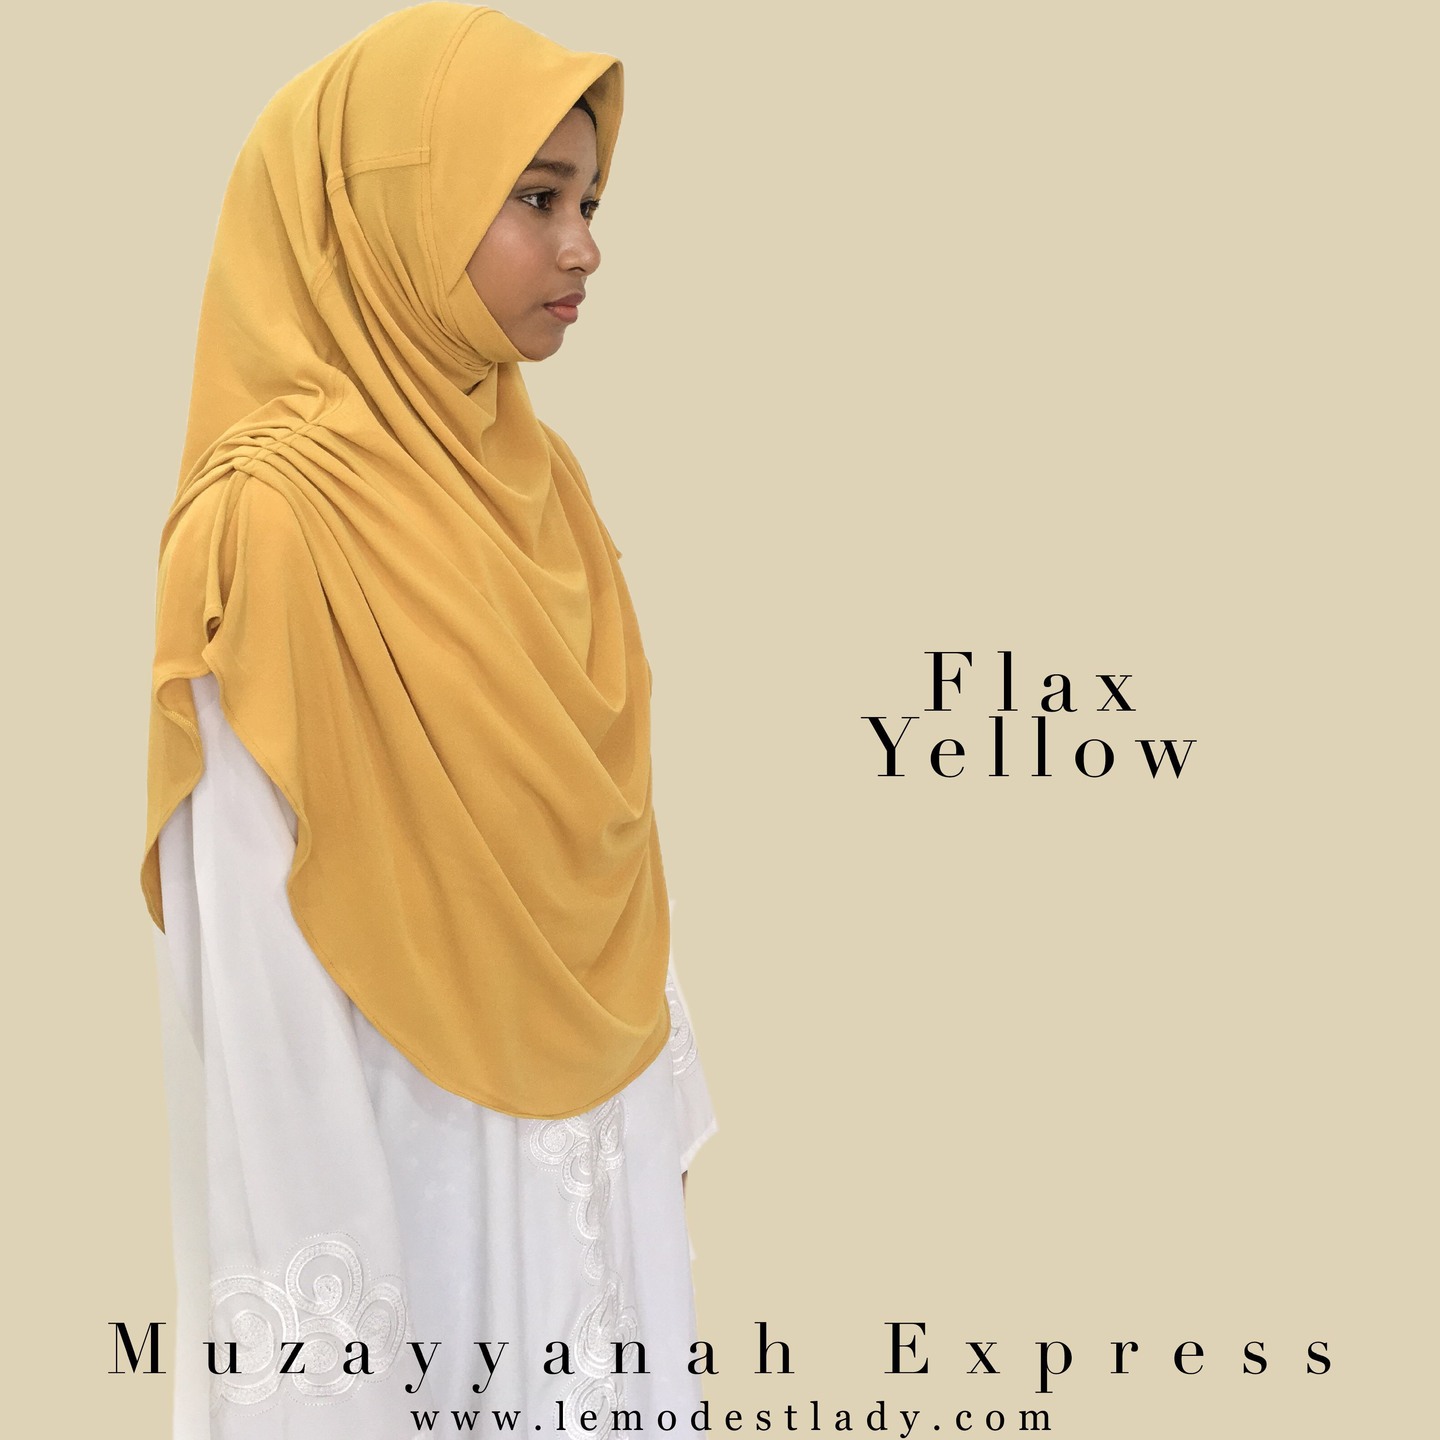 Muzayyanah Express - Flax Yellow